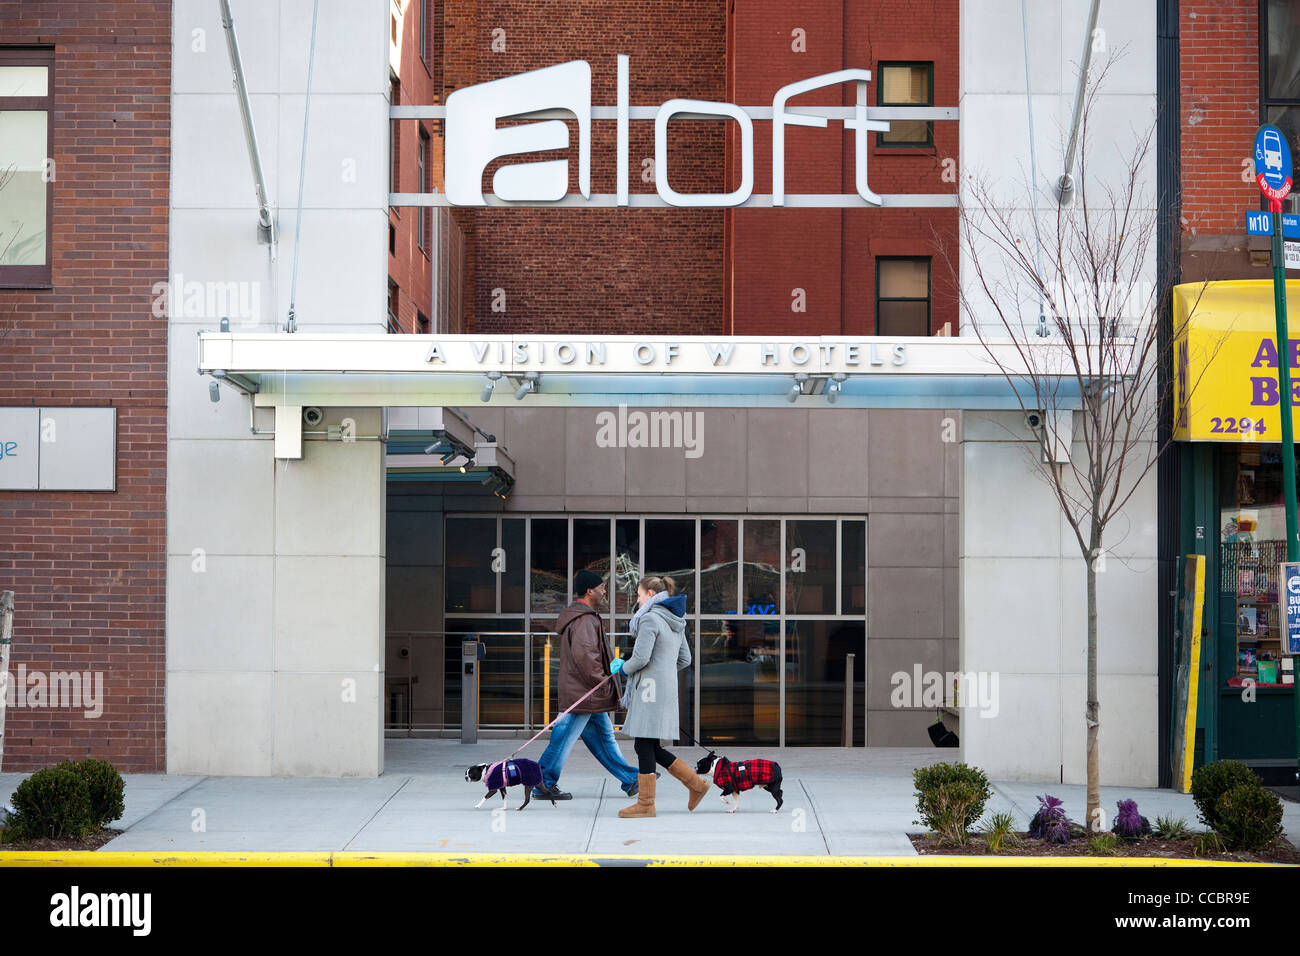 The new Aloft hotel in New York in Harlem Stock Photo